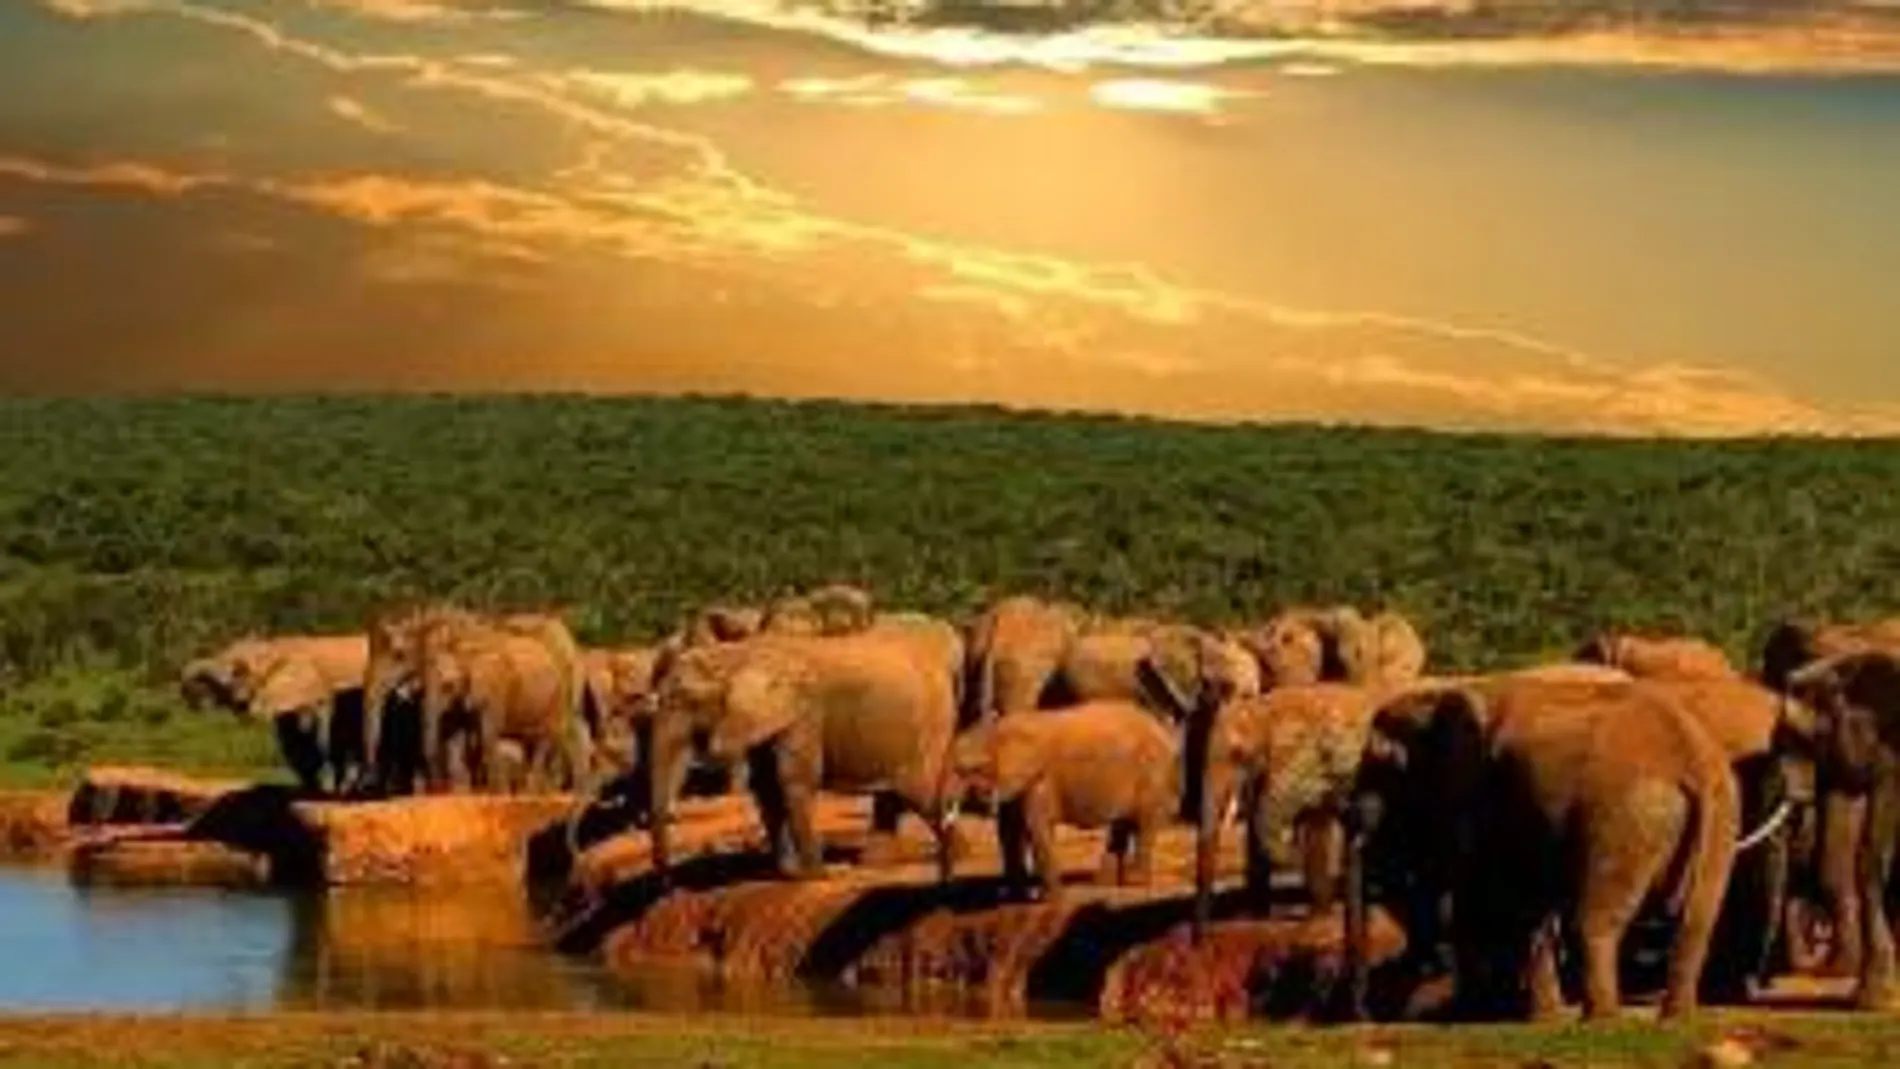 Aunque menos famoso que otros, el Parque Nacional Addo Elephant es el tercer parque nacional más grande de Sudáfrica.